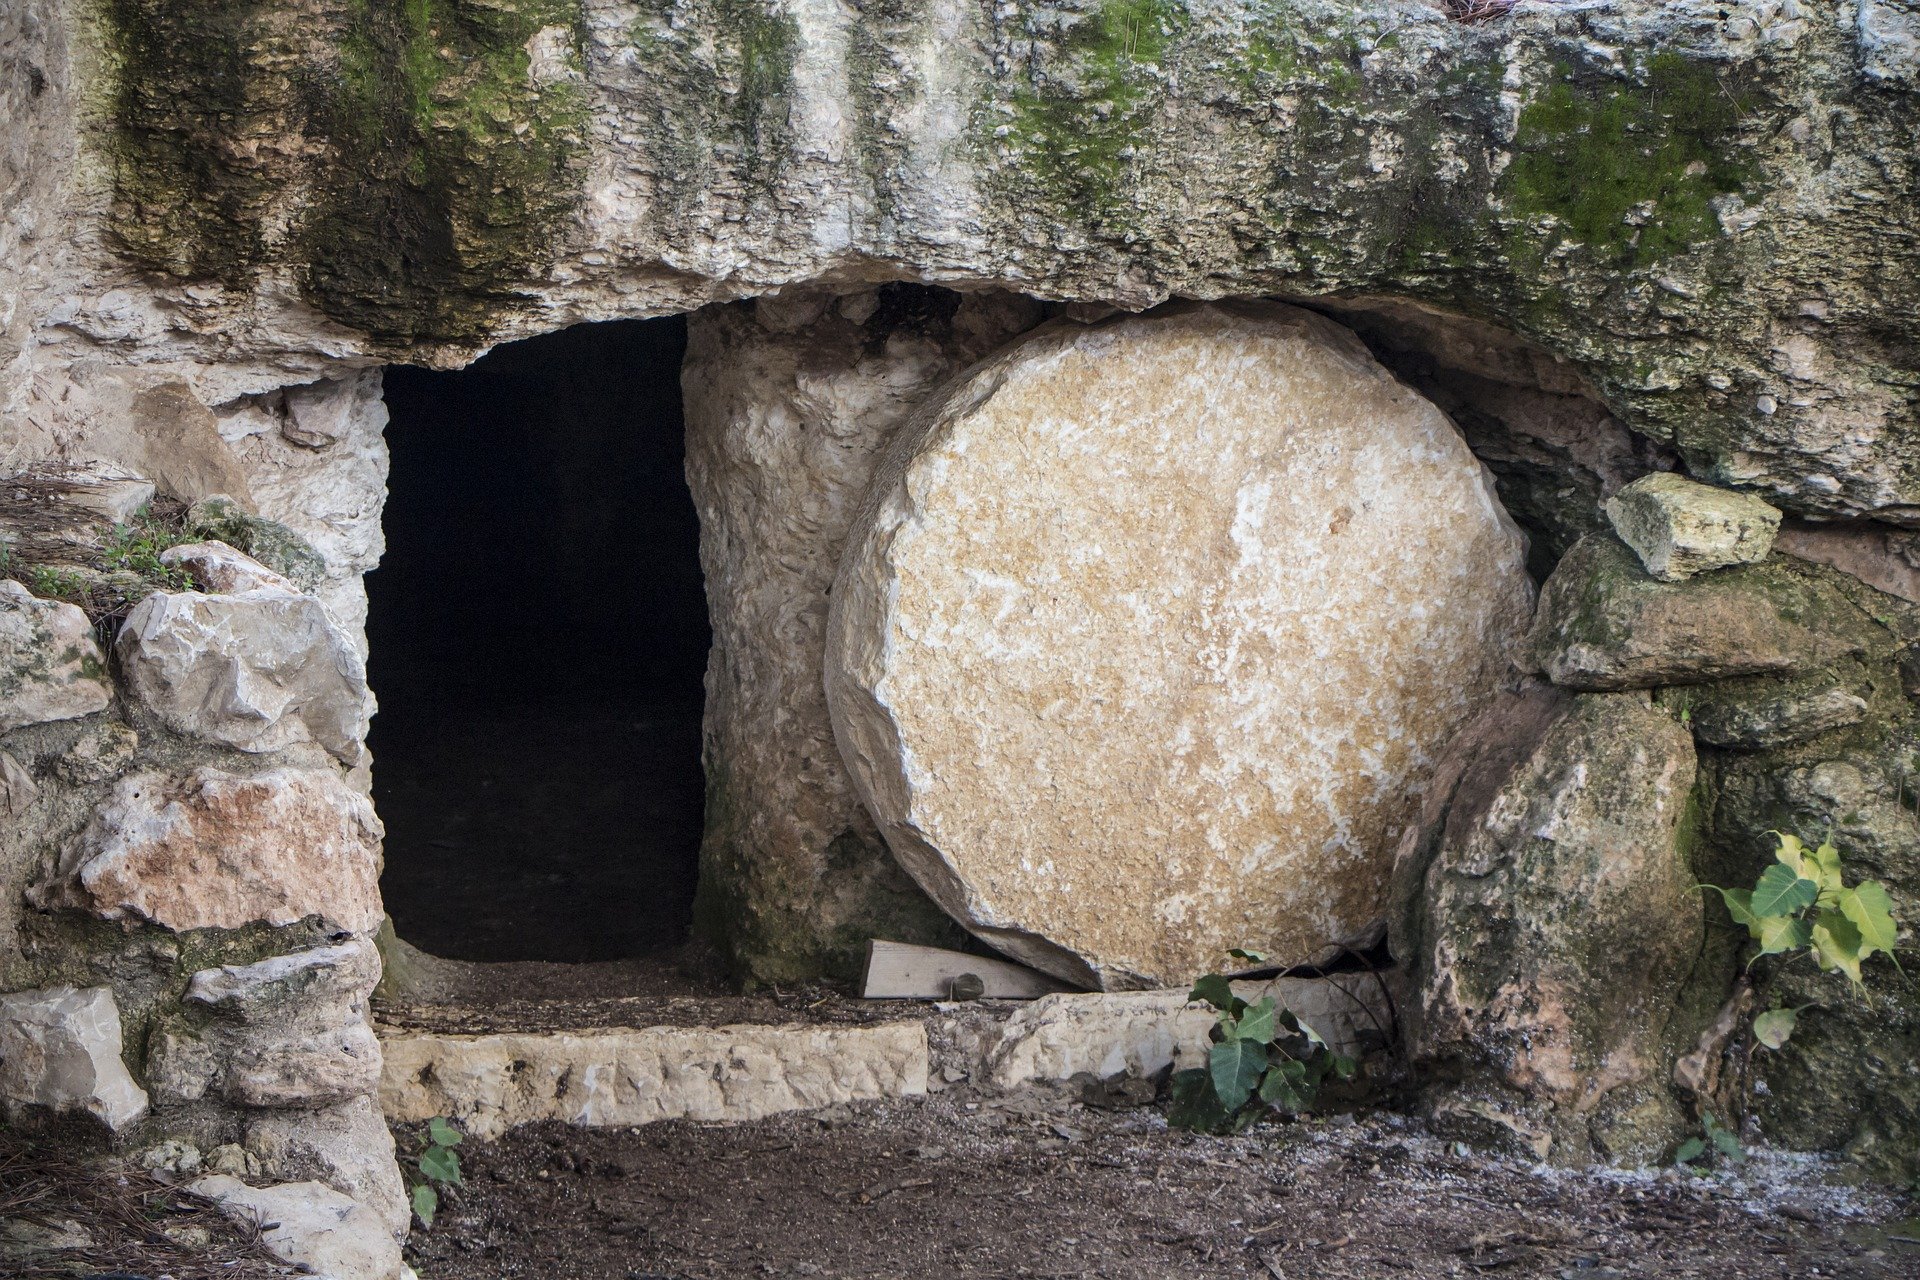 Easter resurrection